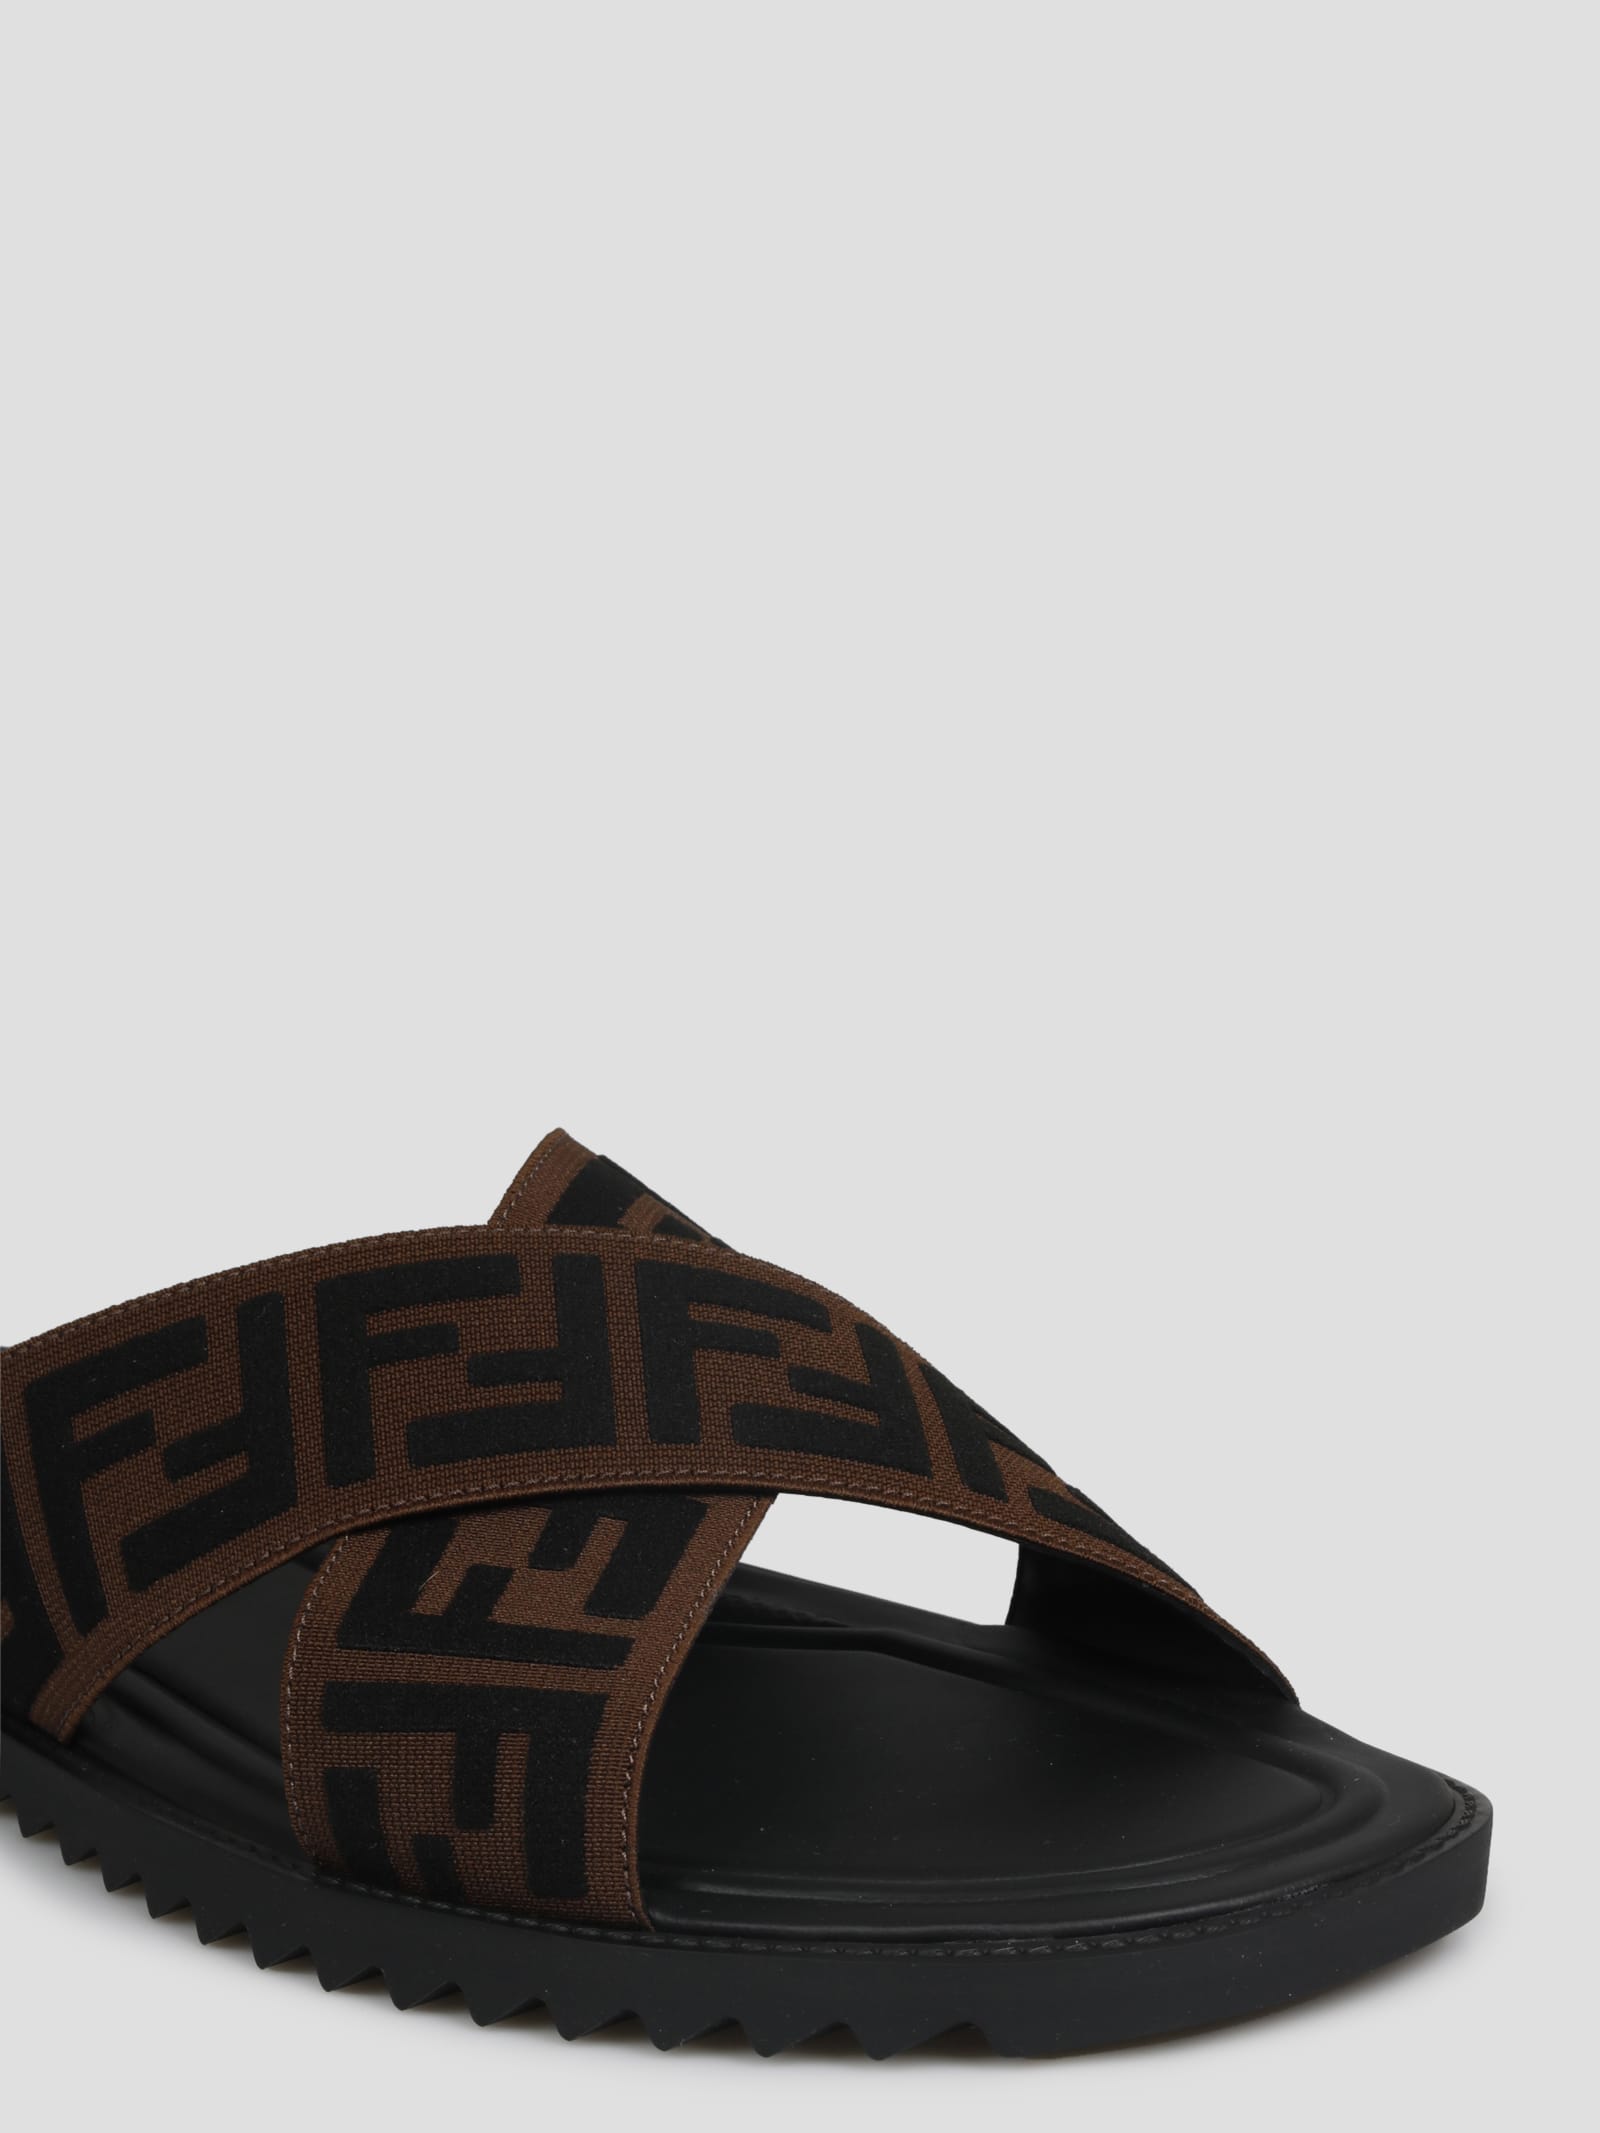 Fendi Ff Slide Sandals In Black | ModeSens